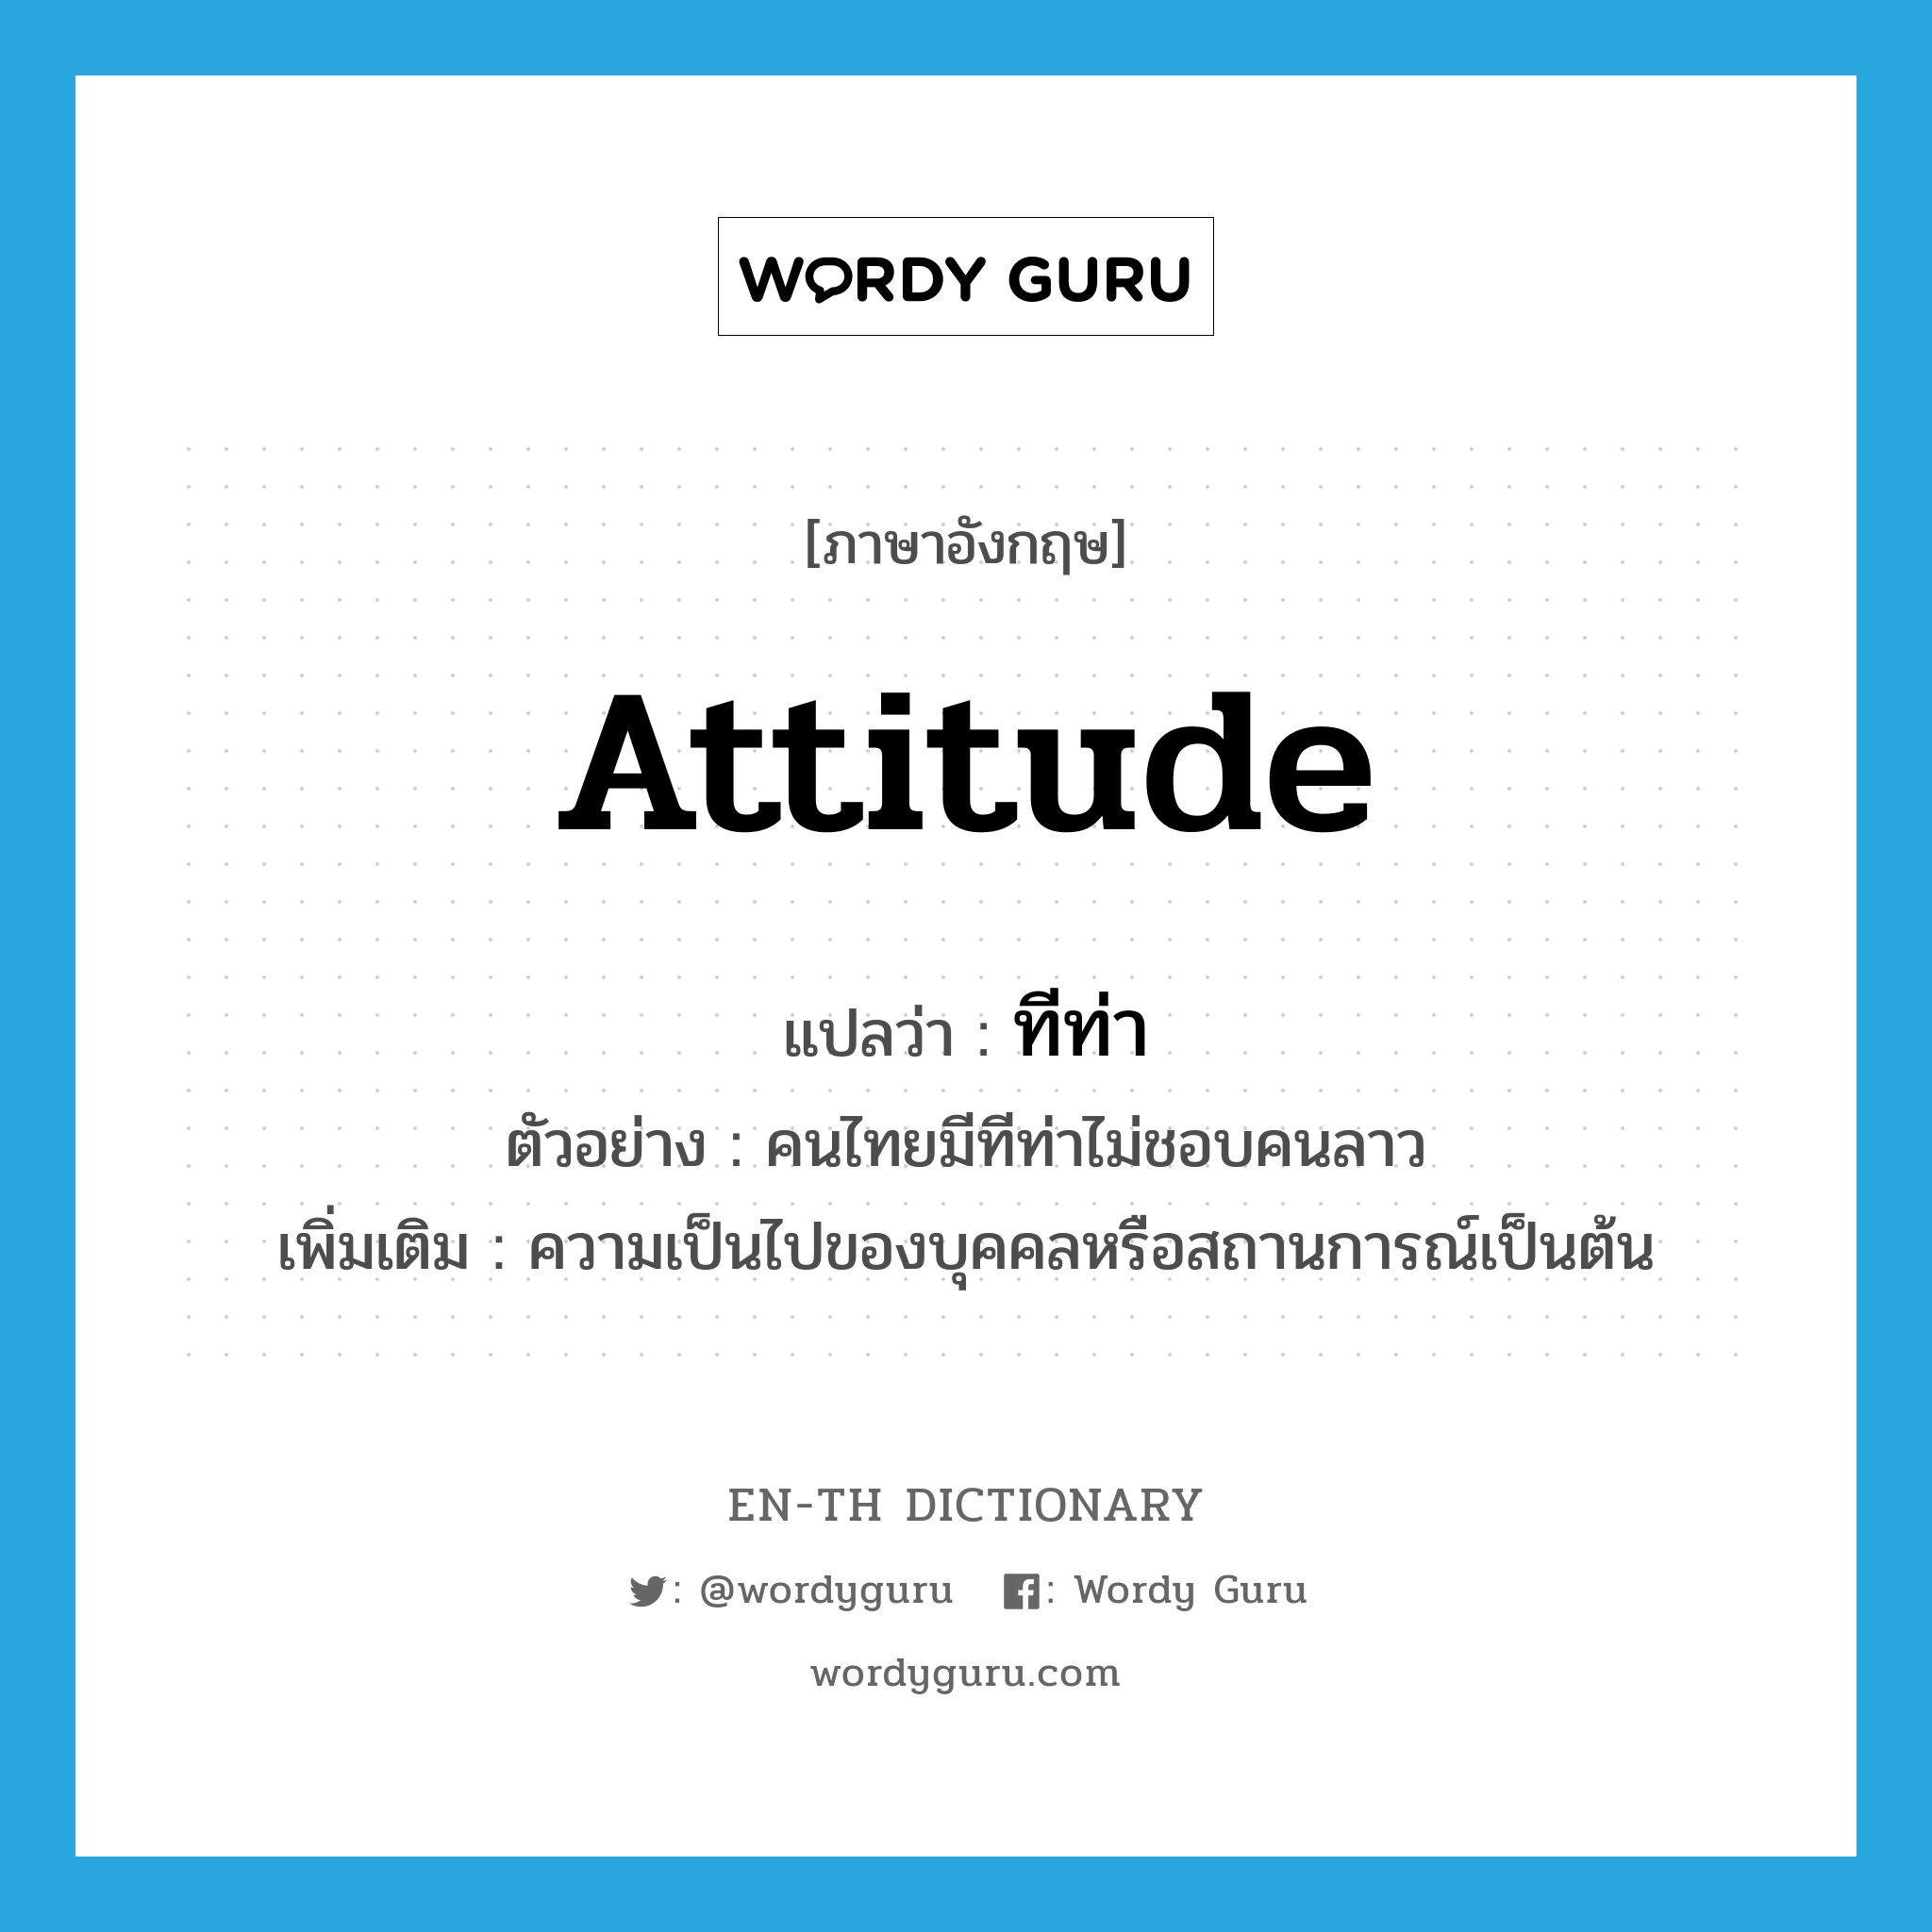 ทีท่า ภาษาอังกฤษ?, คำศัพท์ภาษาอังกฤษ ทีท่า แปลว่า attitude ประเภท N ตัวอย่าง คนไทยมีทีท่าไม่ชอบคนลาว เพิ่มเติม ความเป็นไปของบุคคลหรือสถานการณ์เป็นต้น หมวด N